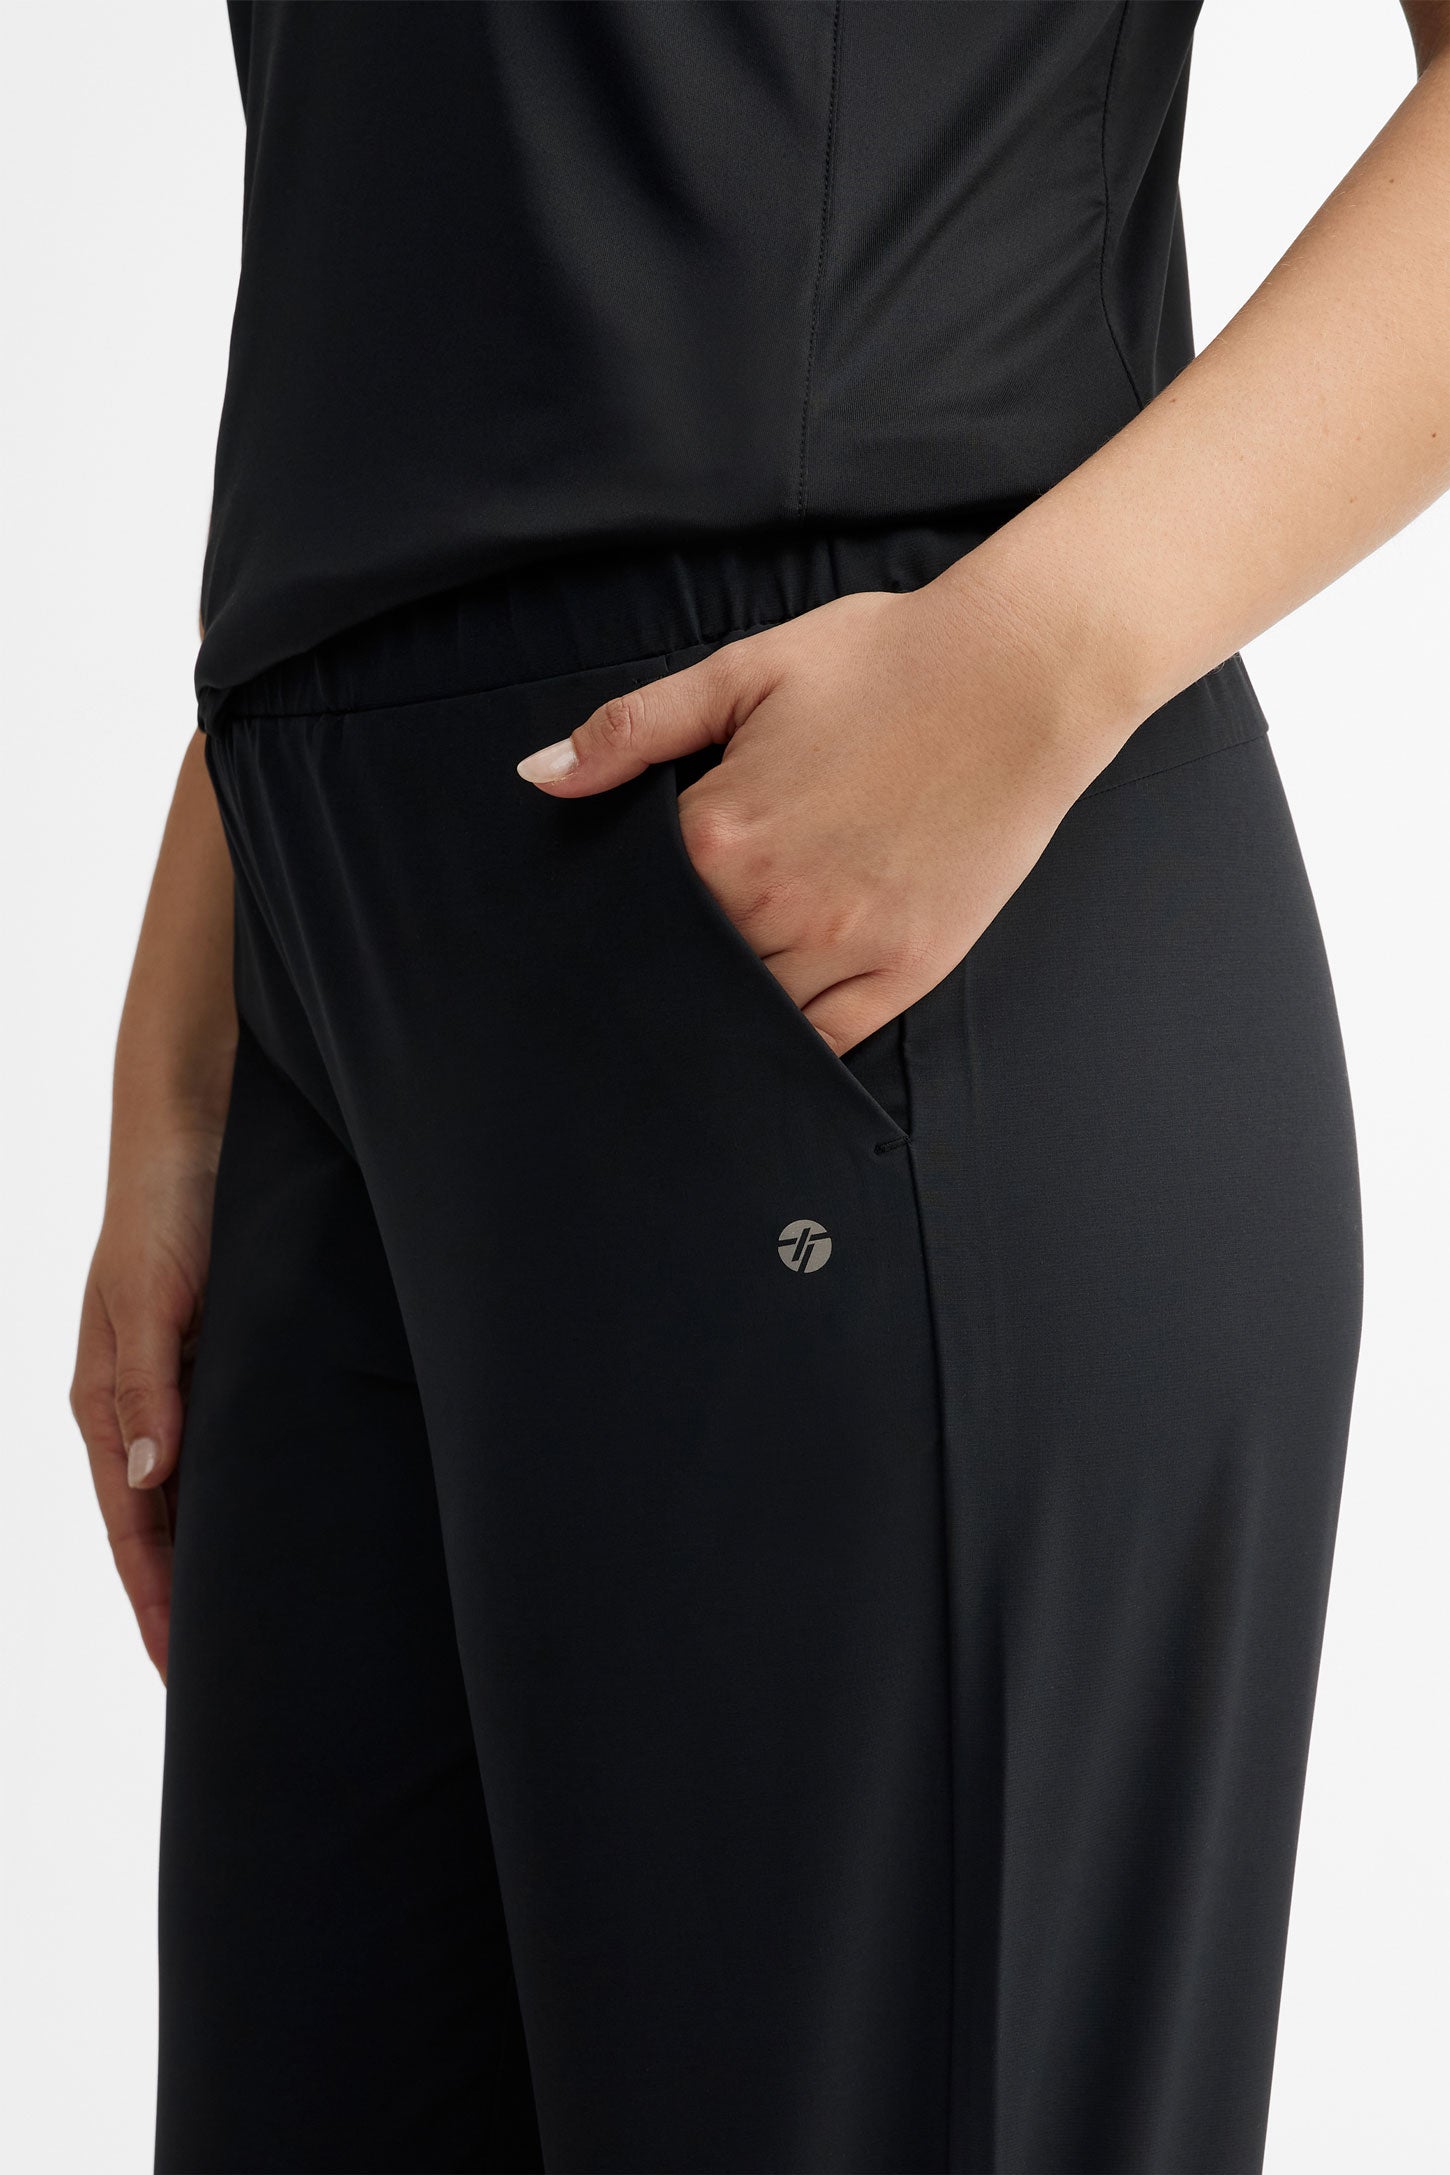 Pantalon athlétique taille élastique - Femme && NOIR